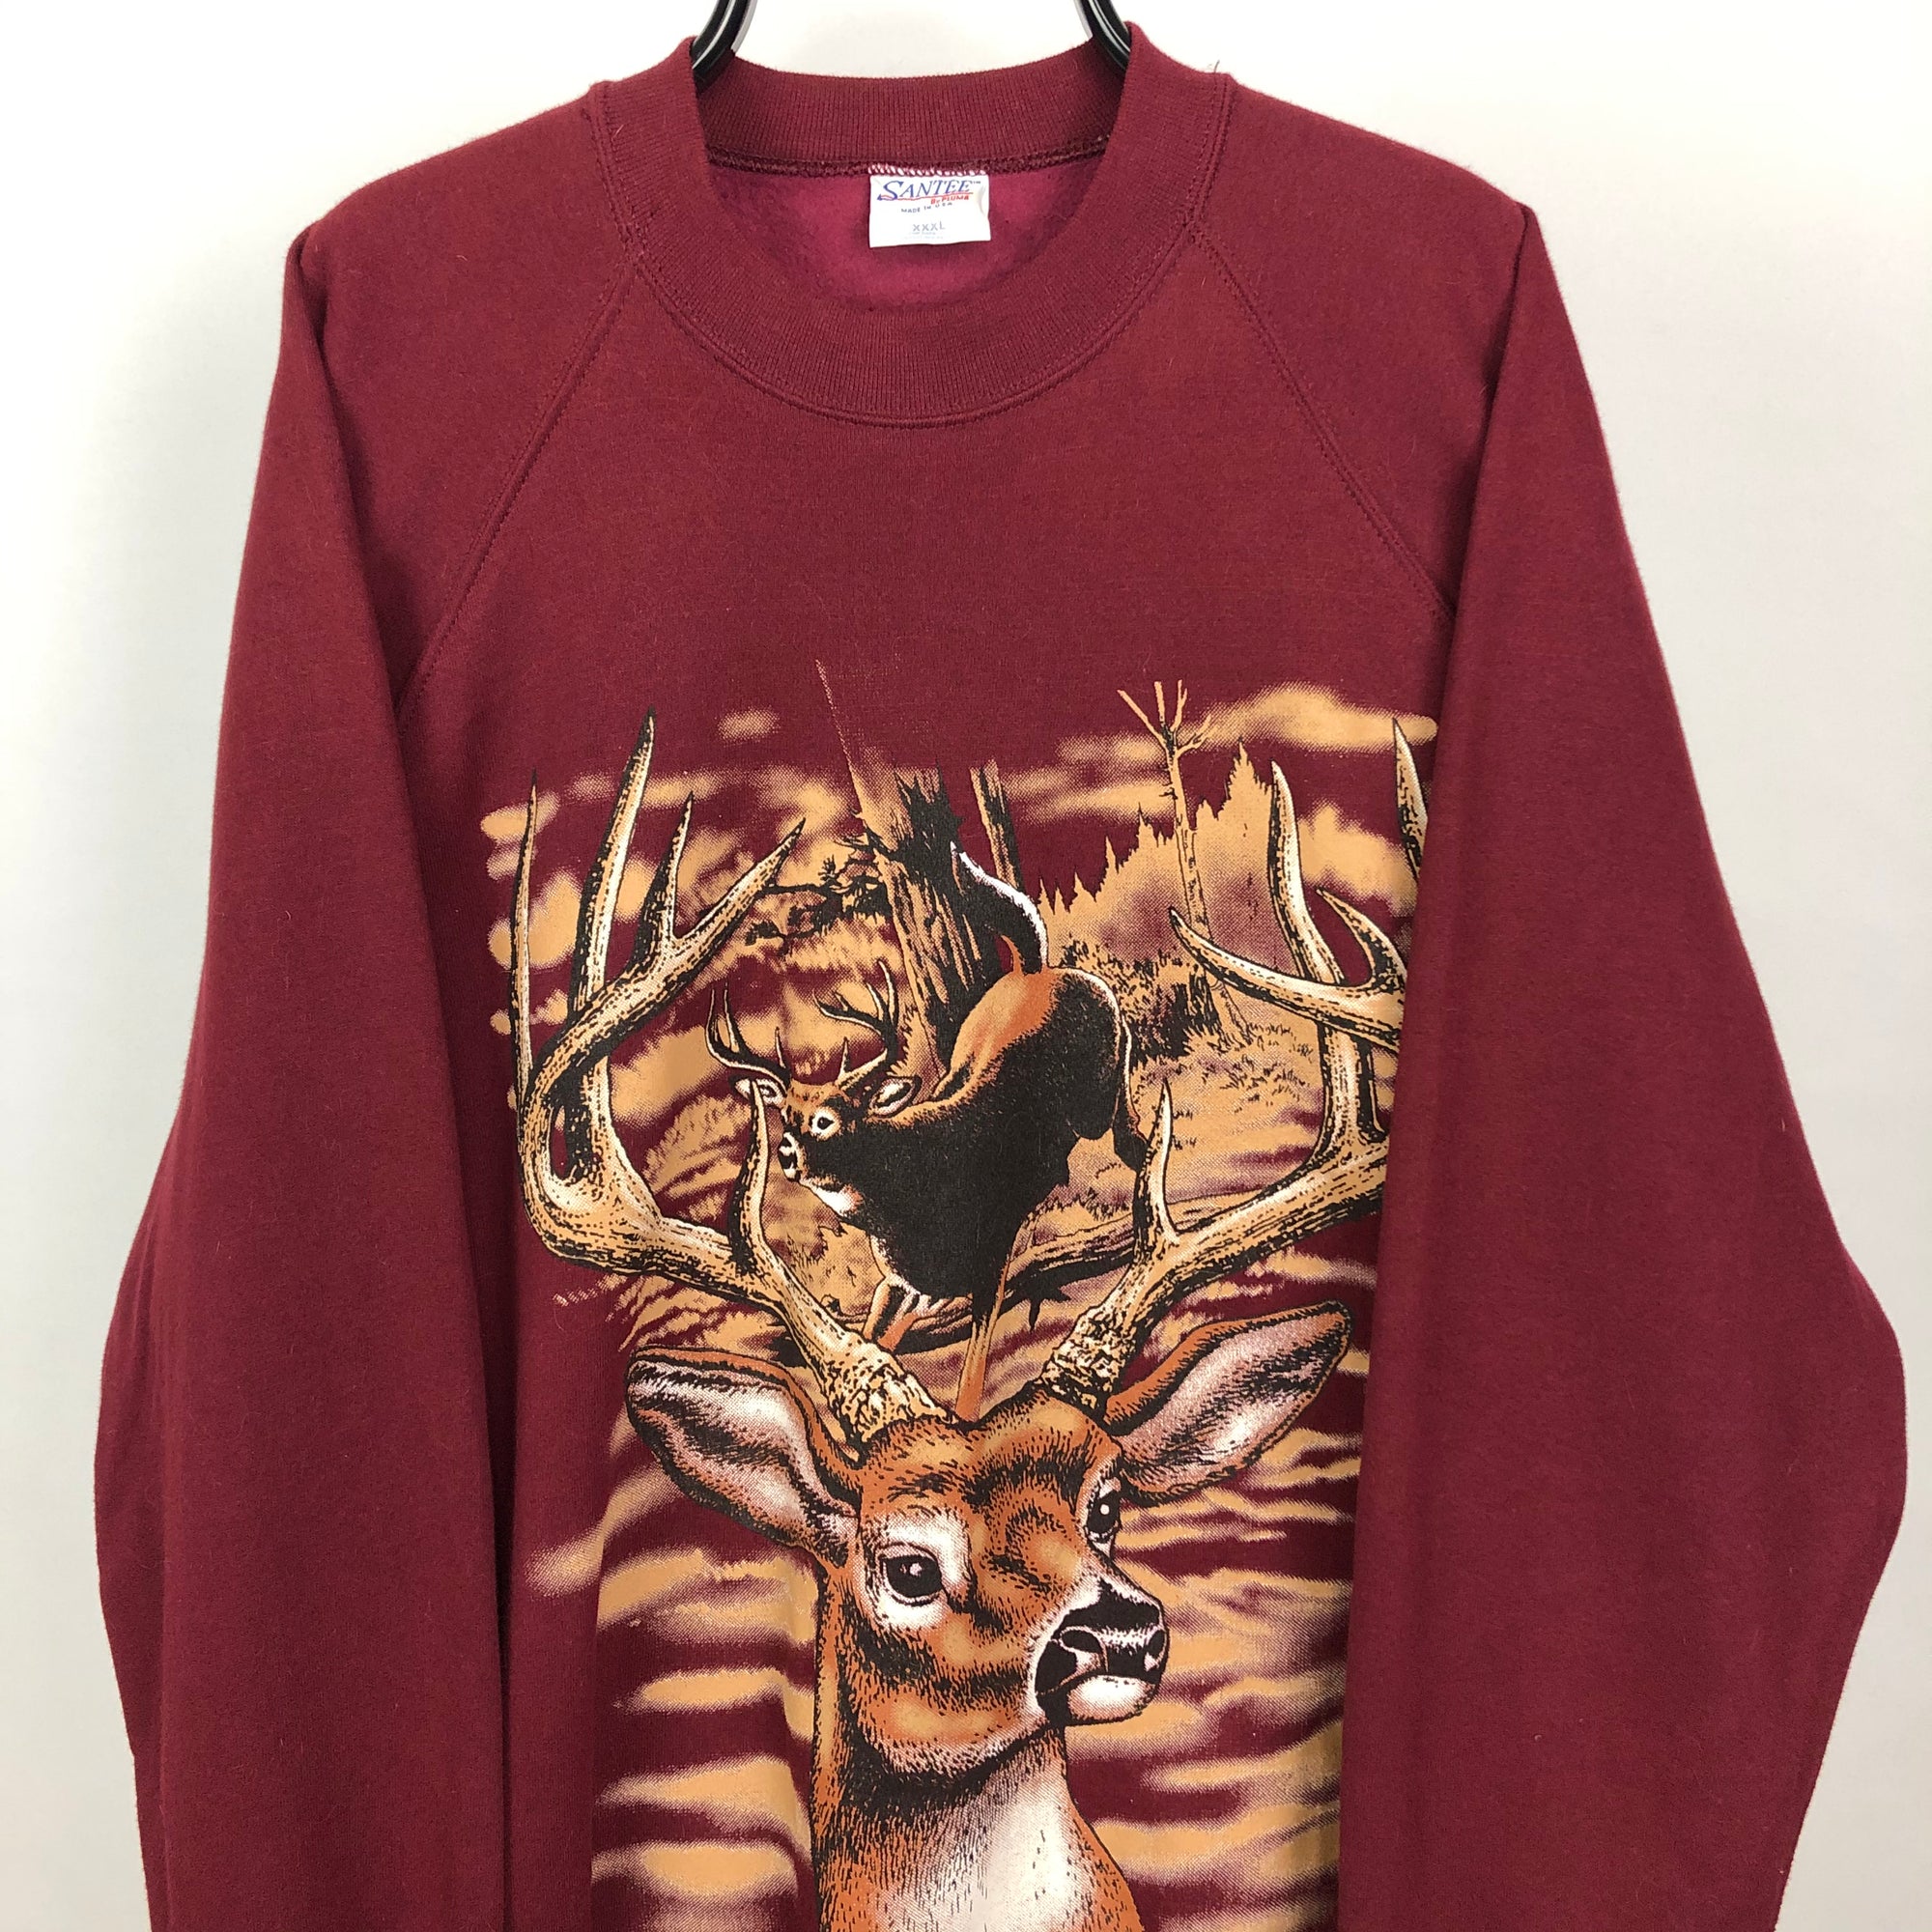 Vintage 90s Reindeer Sweatshirt in Burgundy - Men's XXL/Women's XXXL